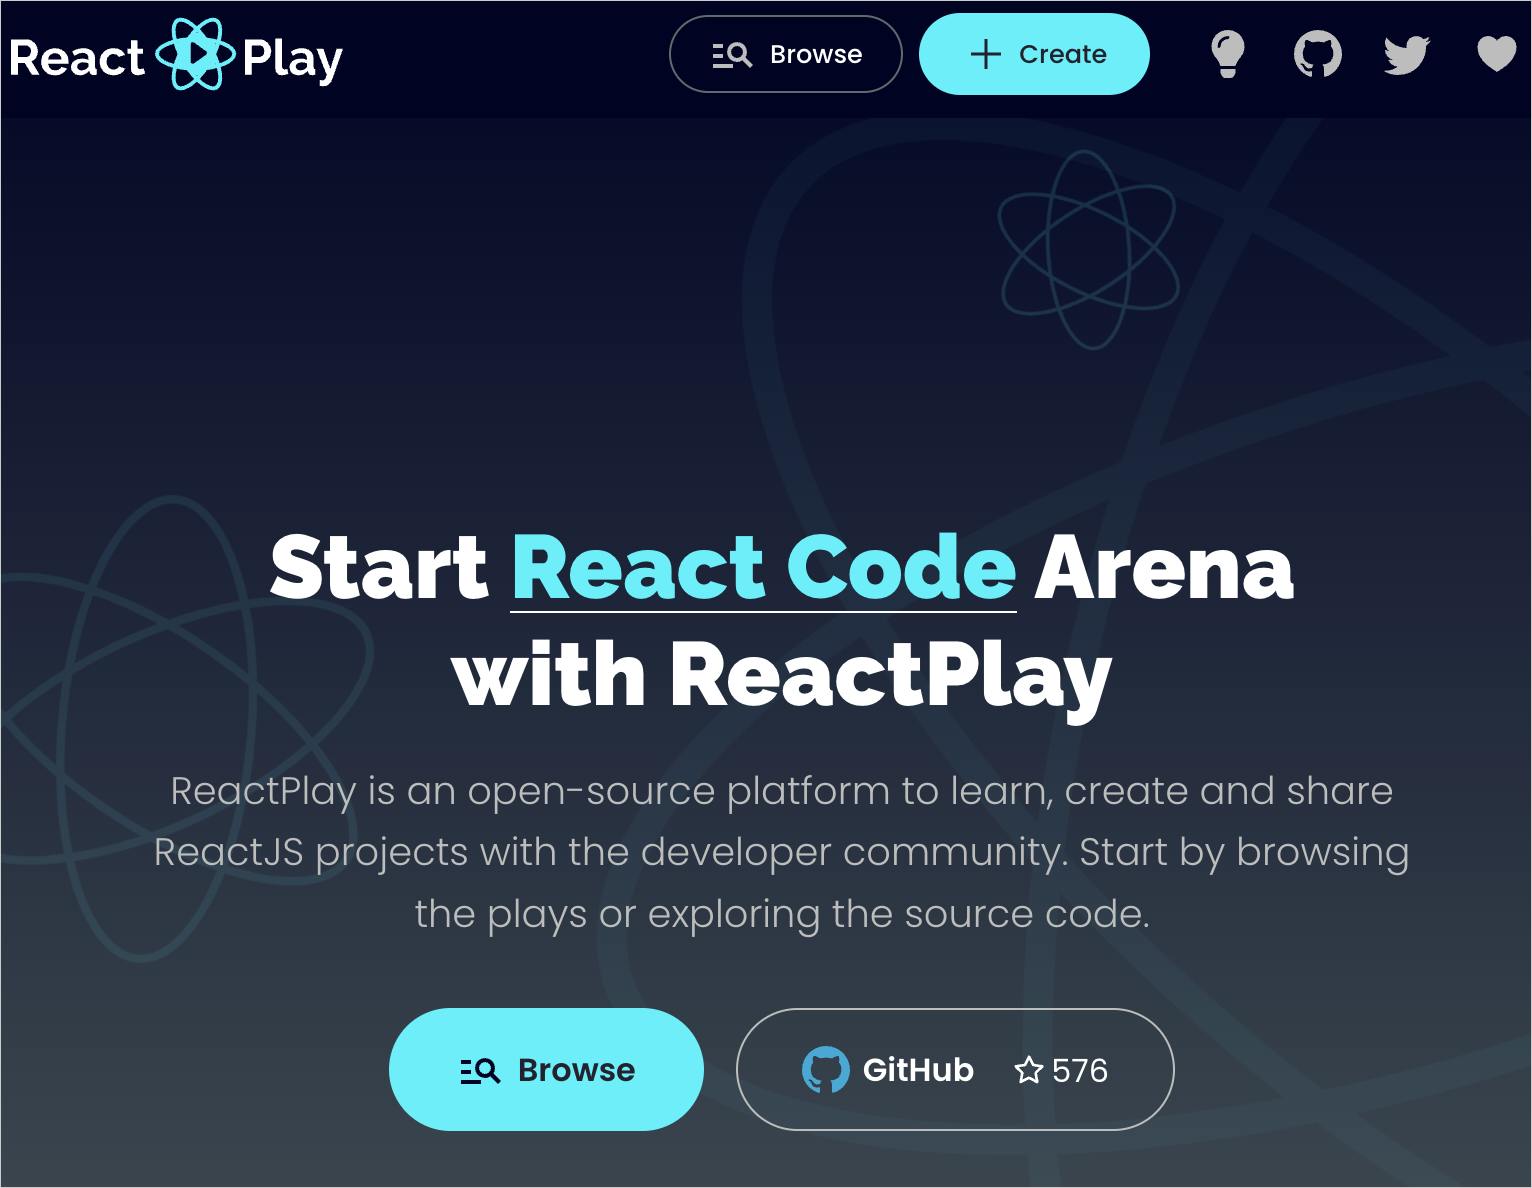 The ReactPlay Website